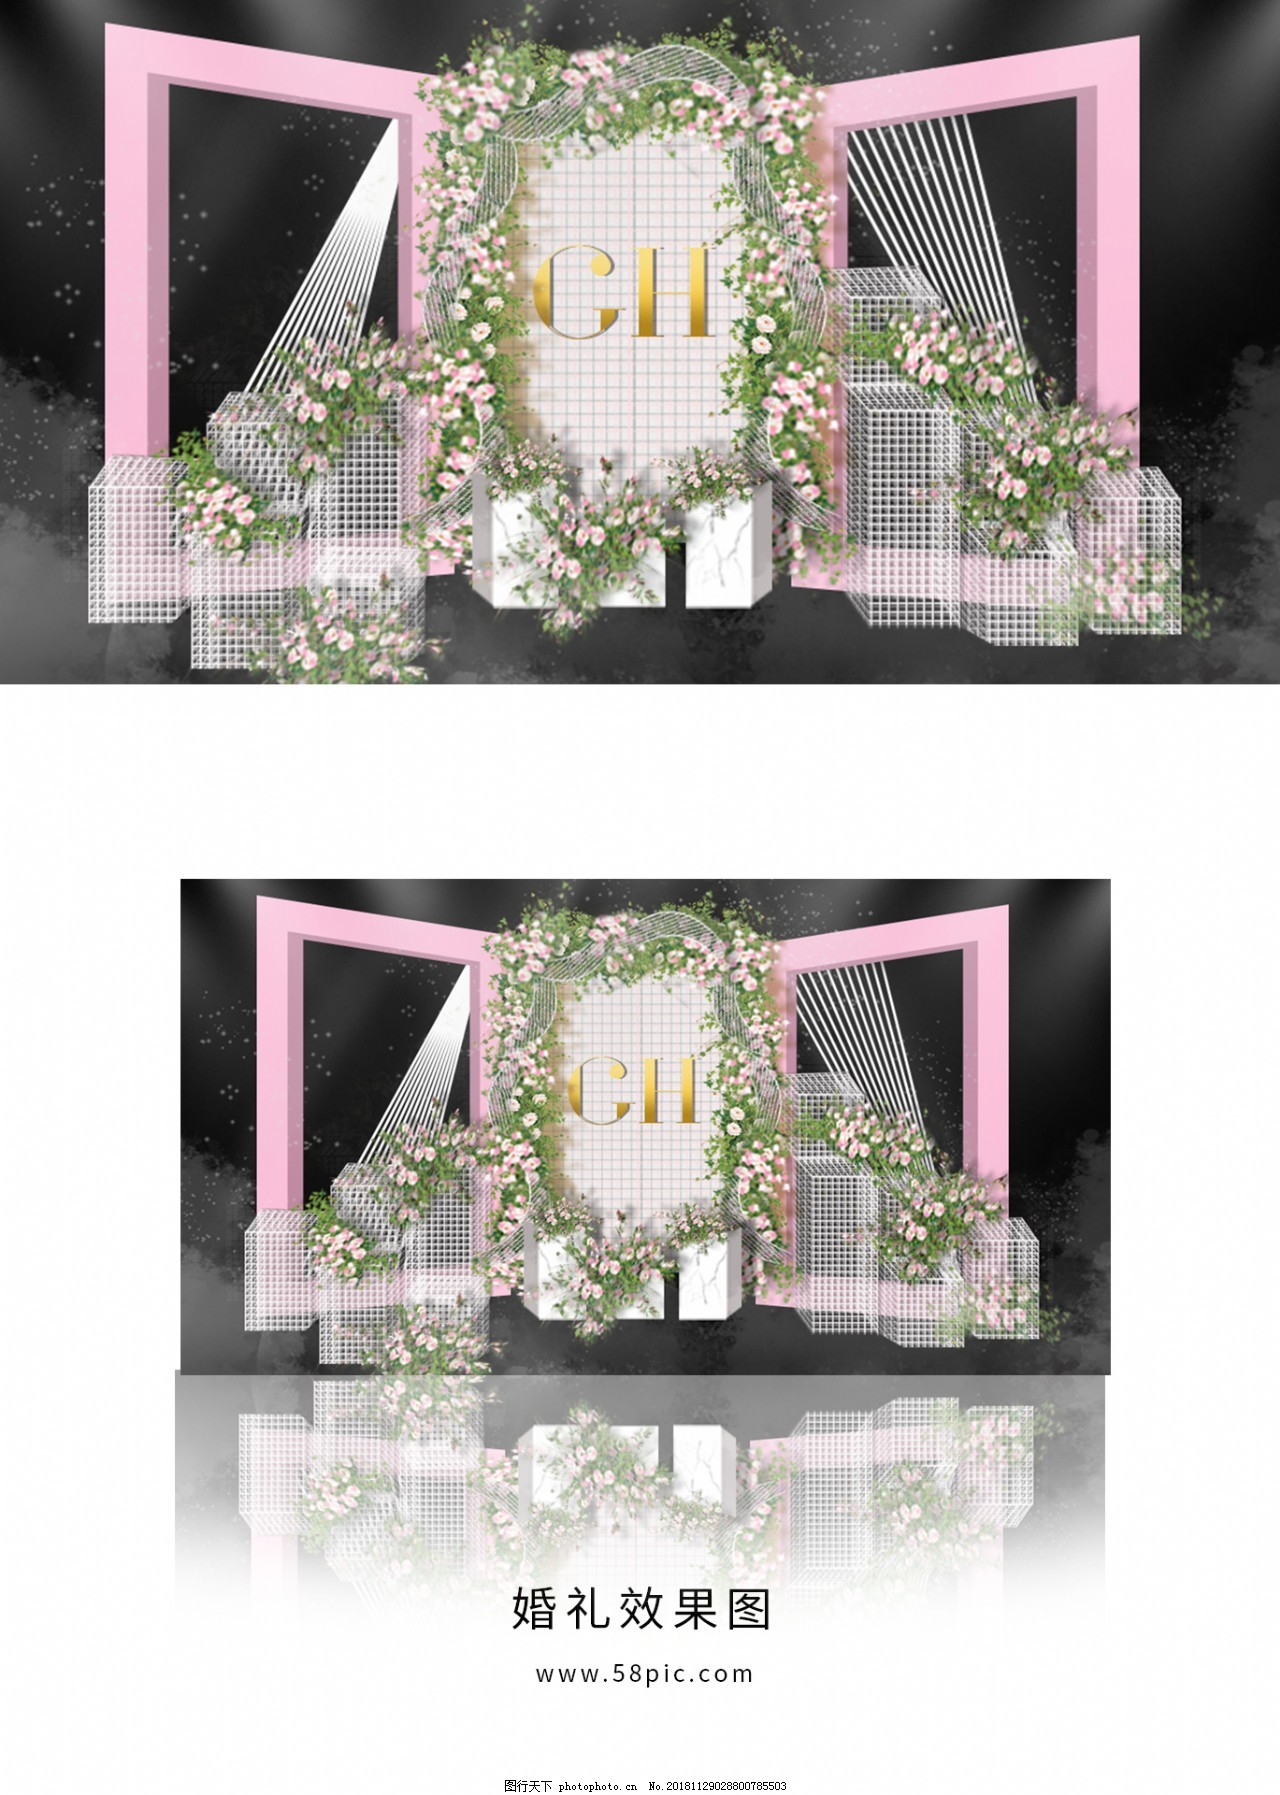 香槟色梦幻婚礼迎宾区效果图图片素材-编号31889743-图行天下